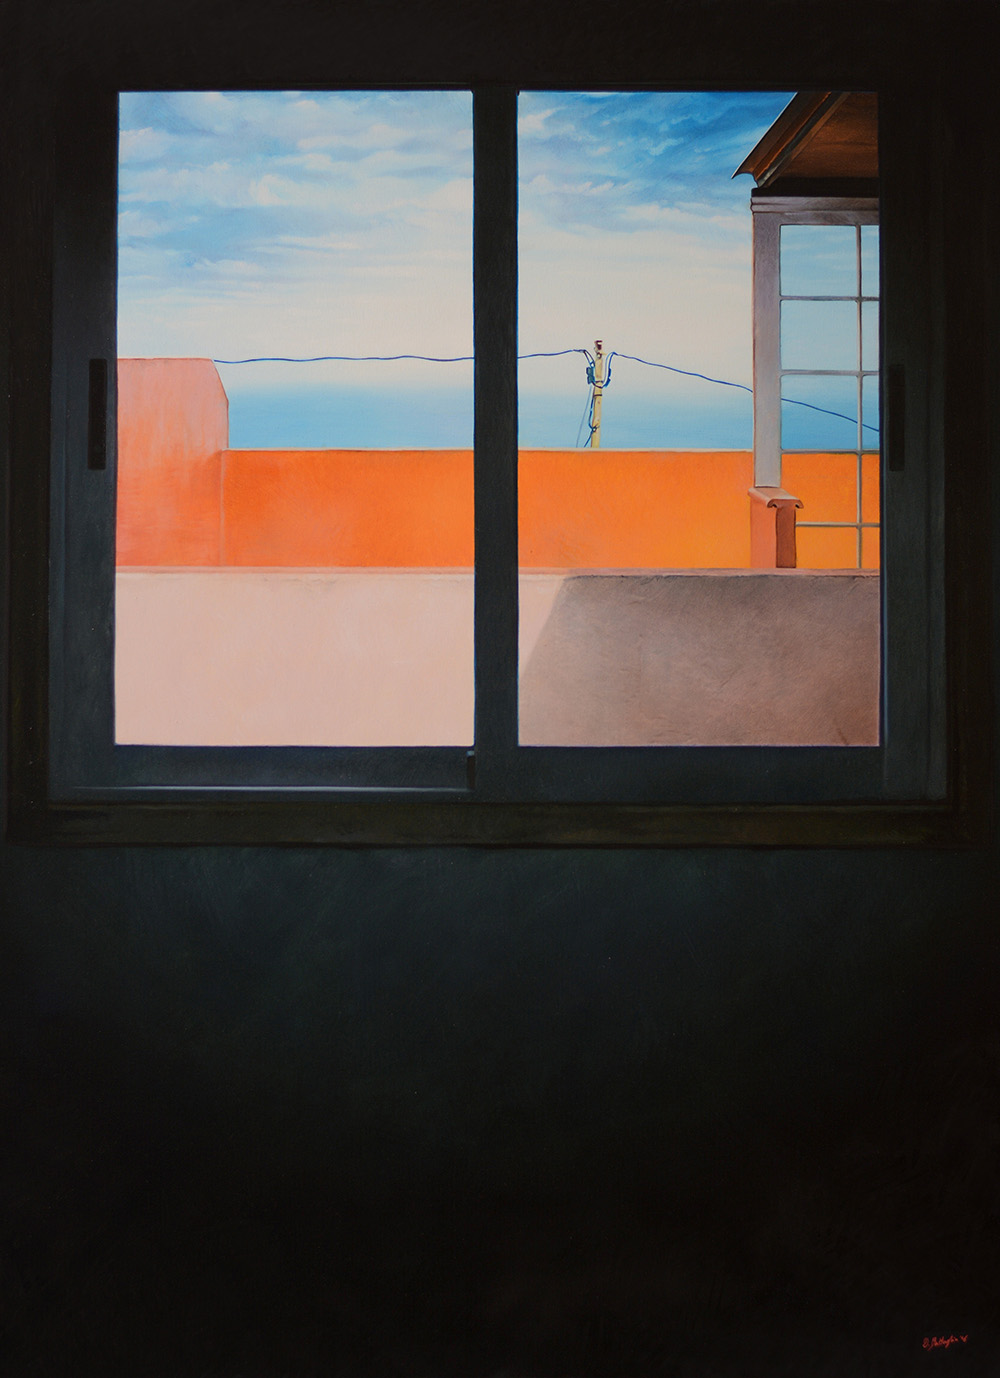 
'Waiting for the Summer'
(2016)
olio su tela,
100x73 cm
